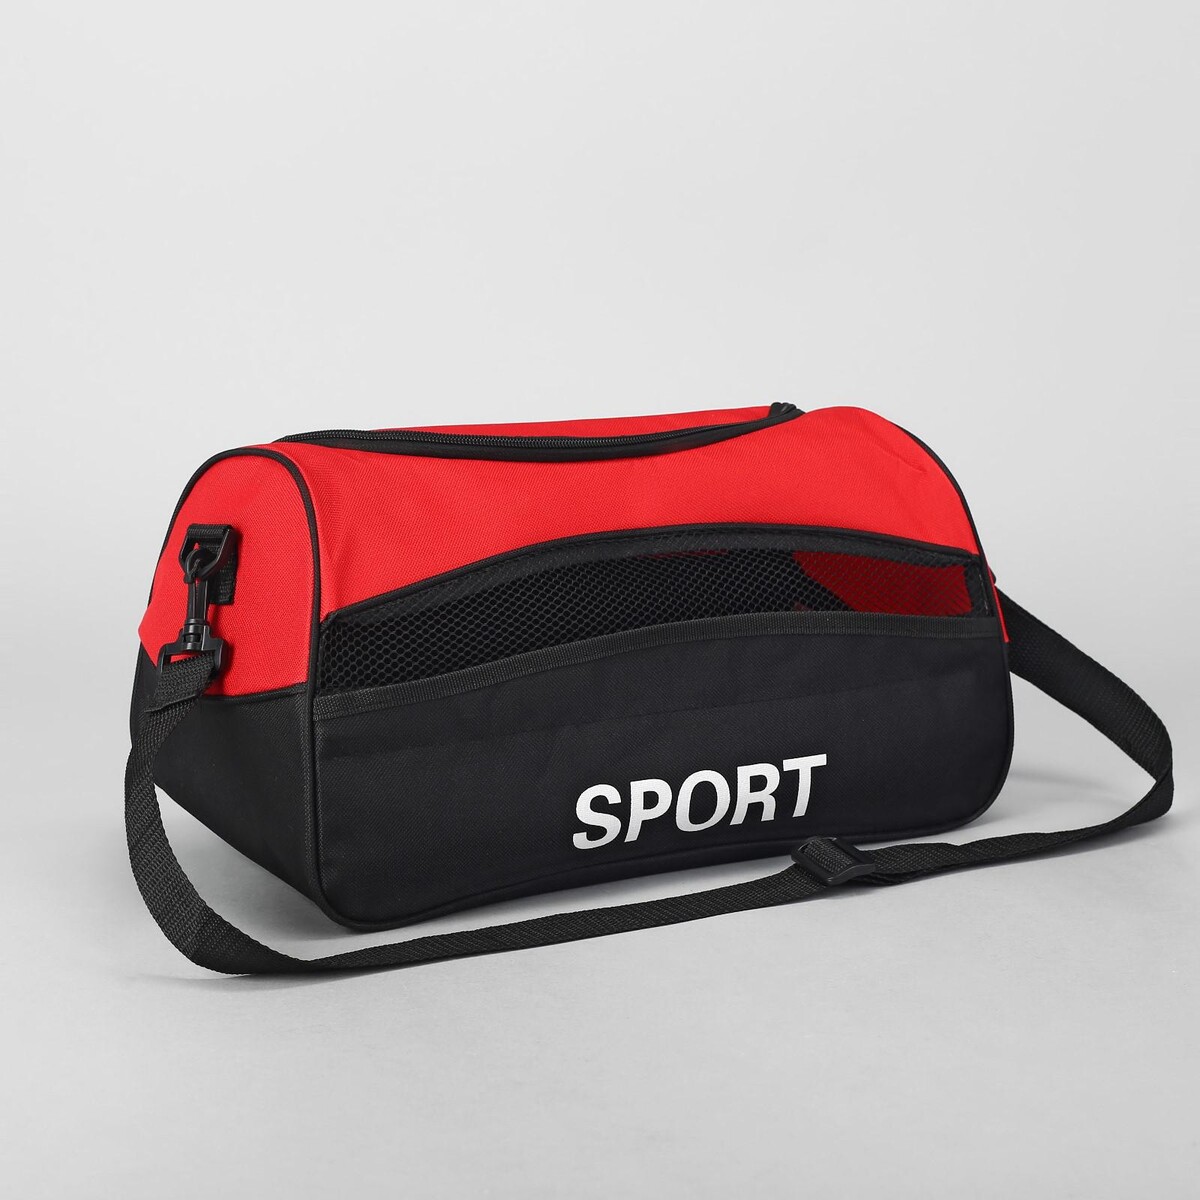 Сумка спортивная на молнии, наружный карман, длинный ремень, цвет красный/черный сумка спортивная russian team наружный карман 40 см х 24 см х 21 см